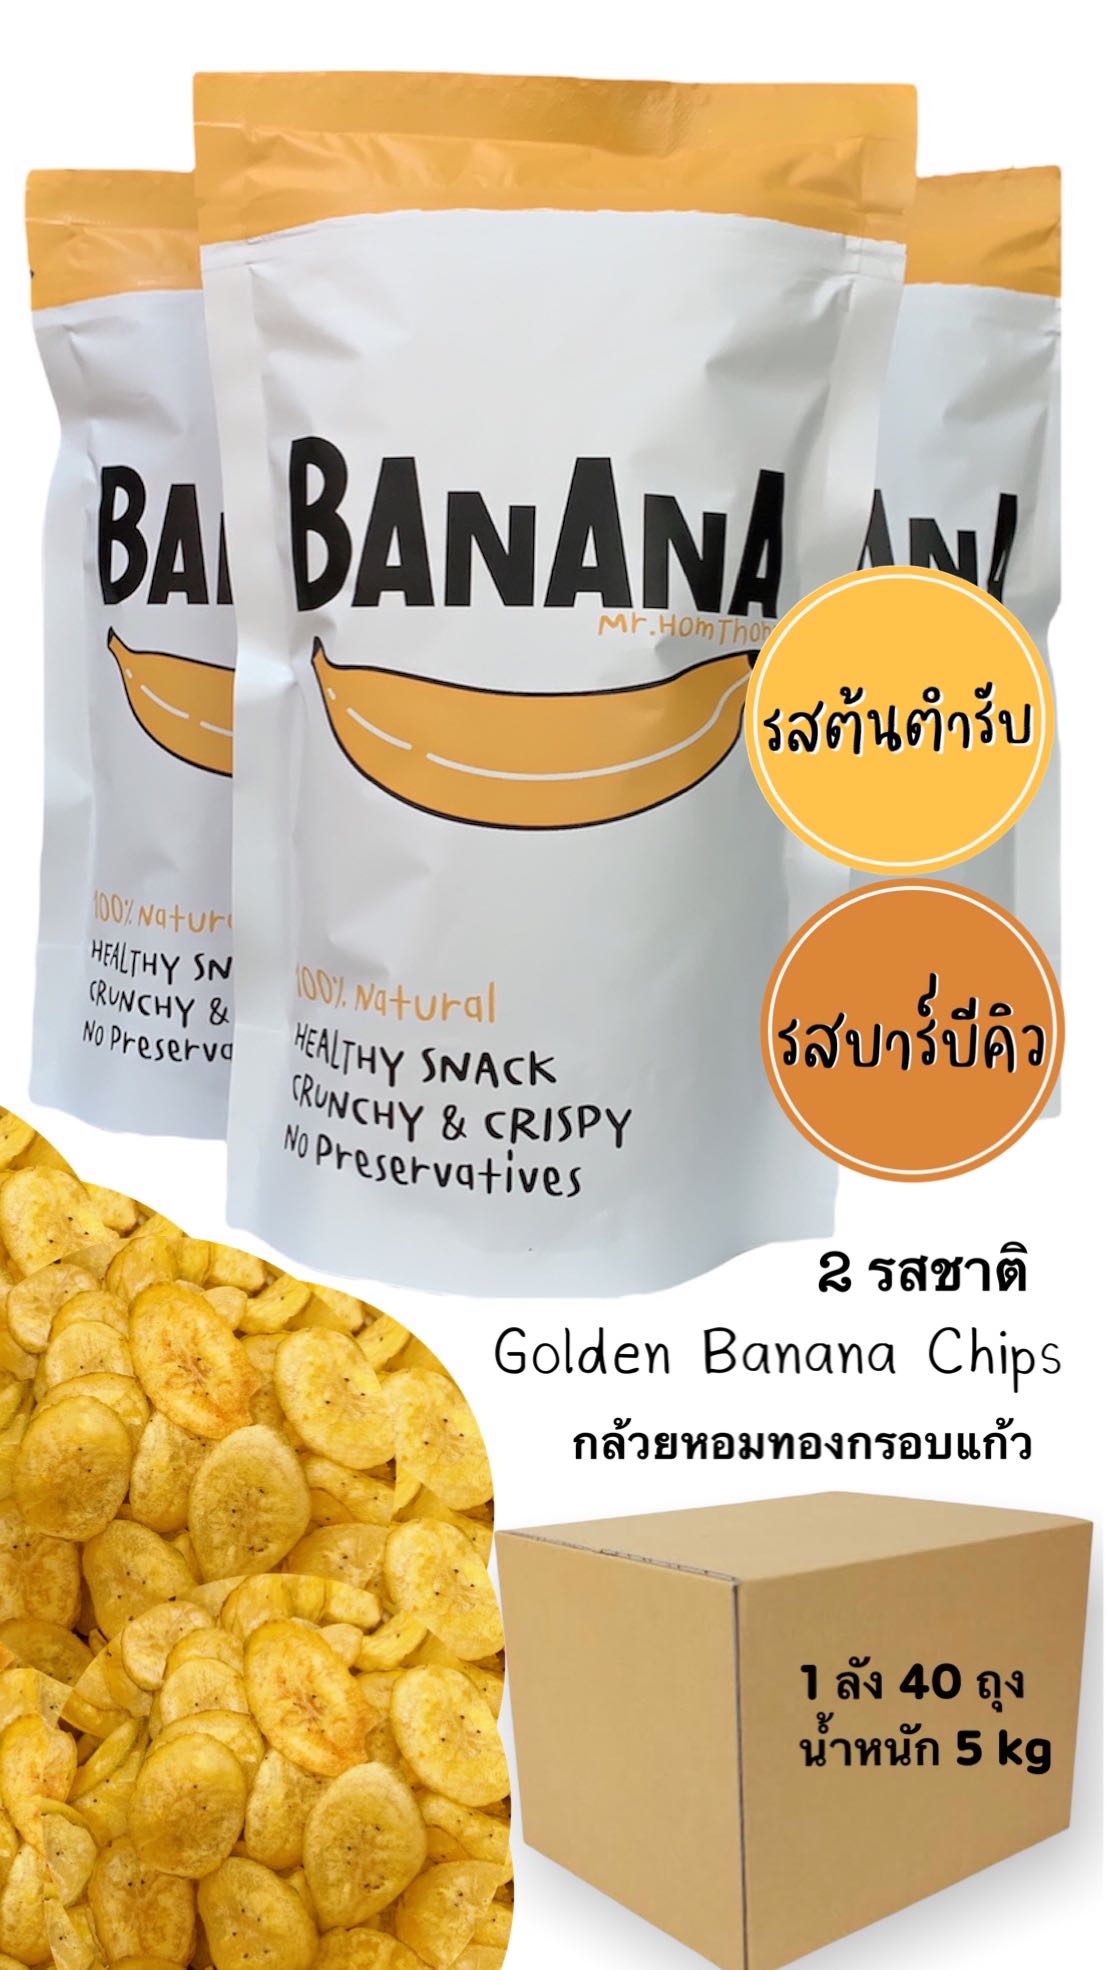 ส่งฟรี BBQ Flavor รสบาร์บีคิว  20 ถุง, Original Flavor รสต้นตำรับ 20 ถุง (Banana Chips)